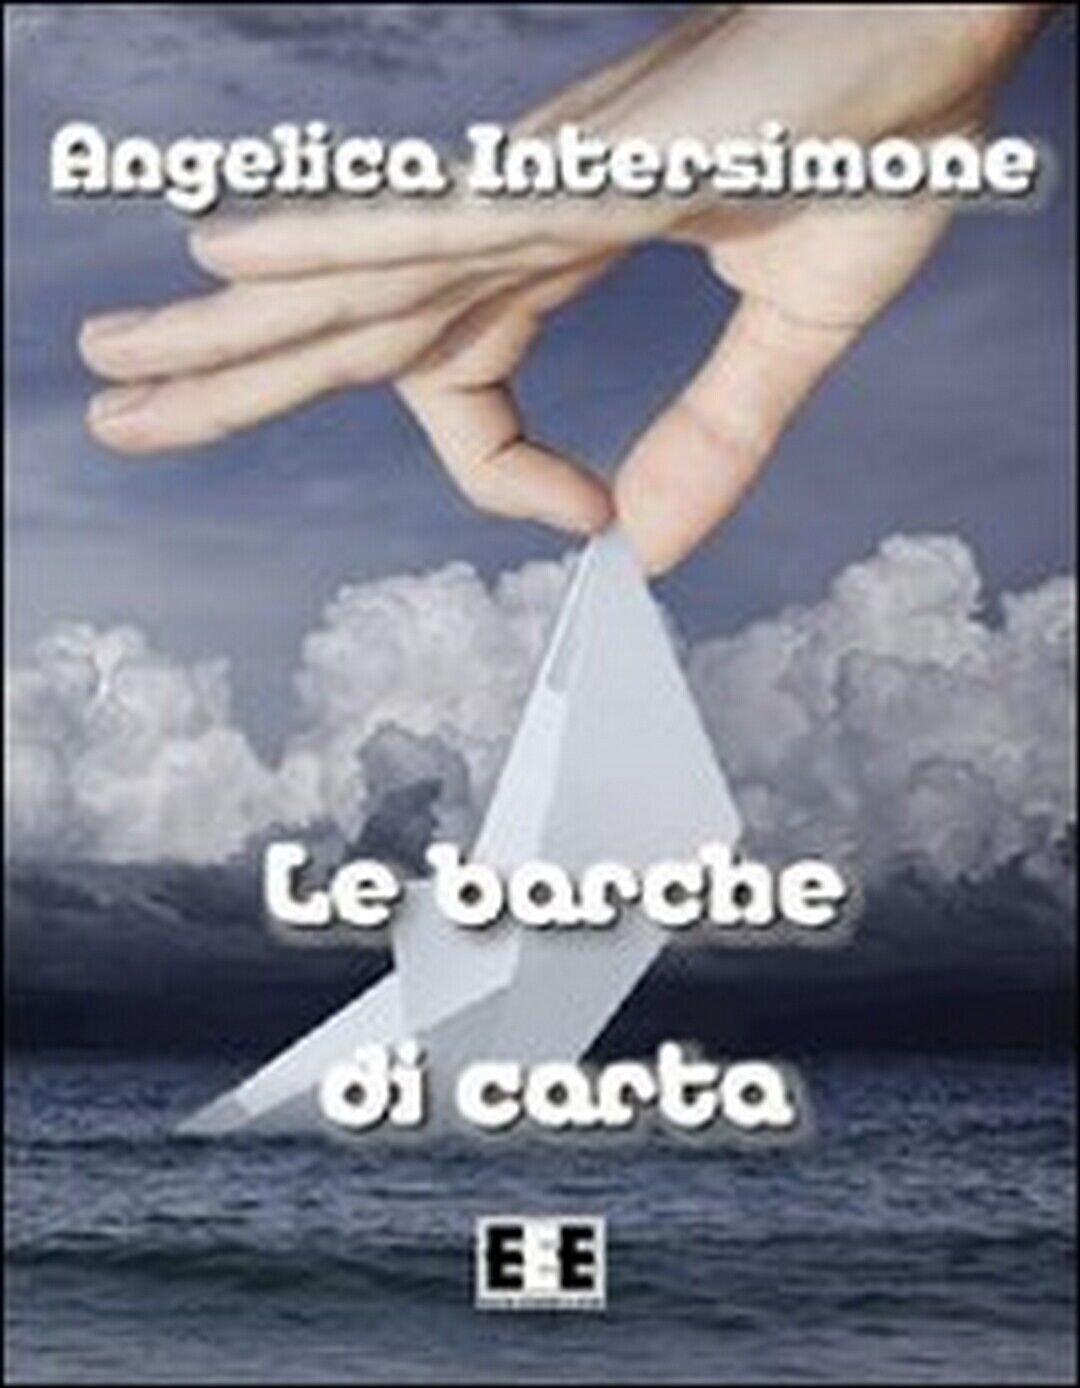 Le barche di carta  di Angelica Intersimone,  2013,  Eee-edizioni Esordienti